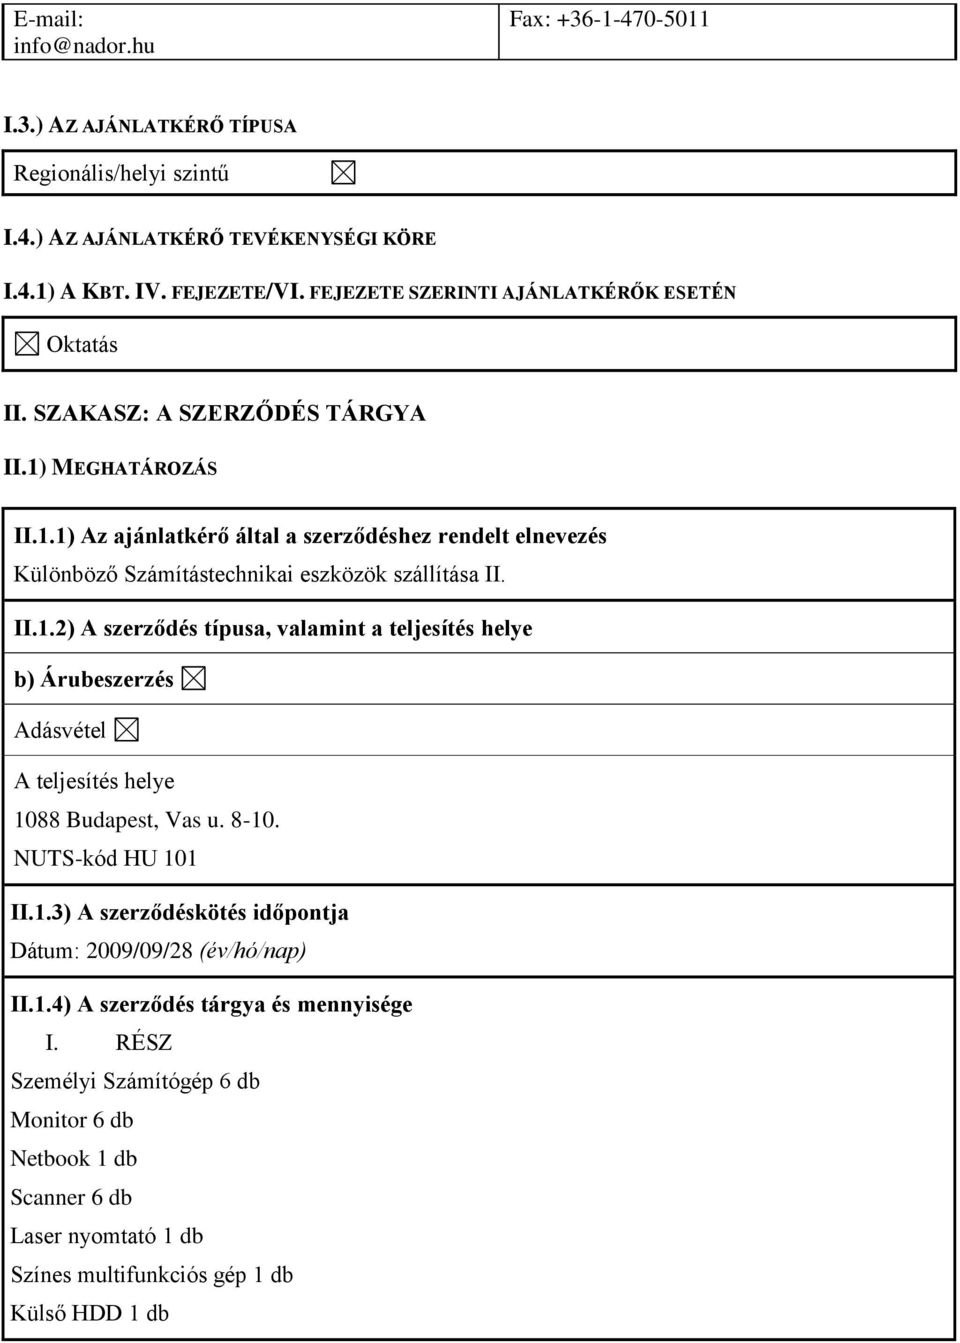 II.1.2) A szerződés típusa, valamint a teljesítés helye b) Árubeszerzés Adásvétel A teljesítés helye 1088 Budapest, Vas u. 8-10. NUTS-kód HU 101 II.1.3) A szerződéskötés időpontja Dátum: 2009/09/28 (év/hó/nap) II.